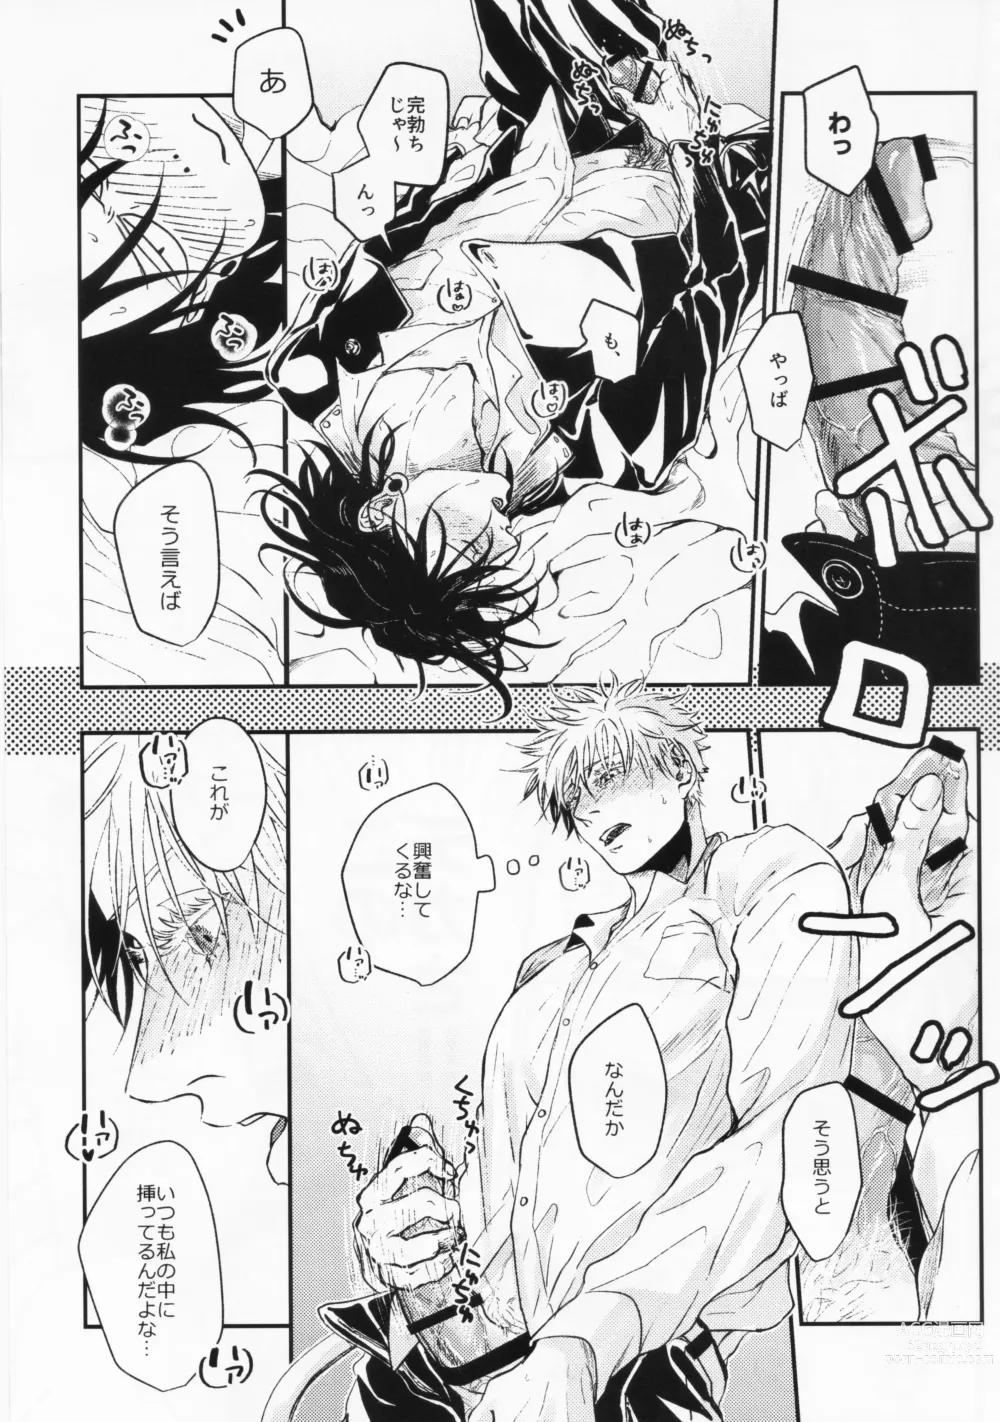 Page 17 of doujinshi Surussho.